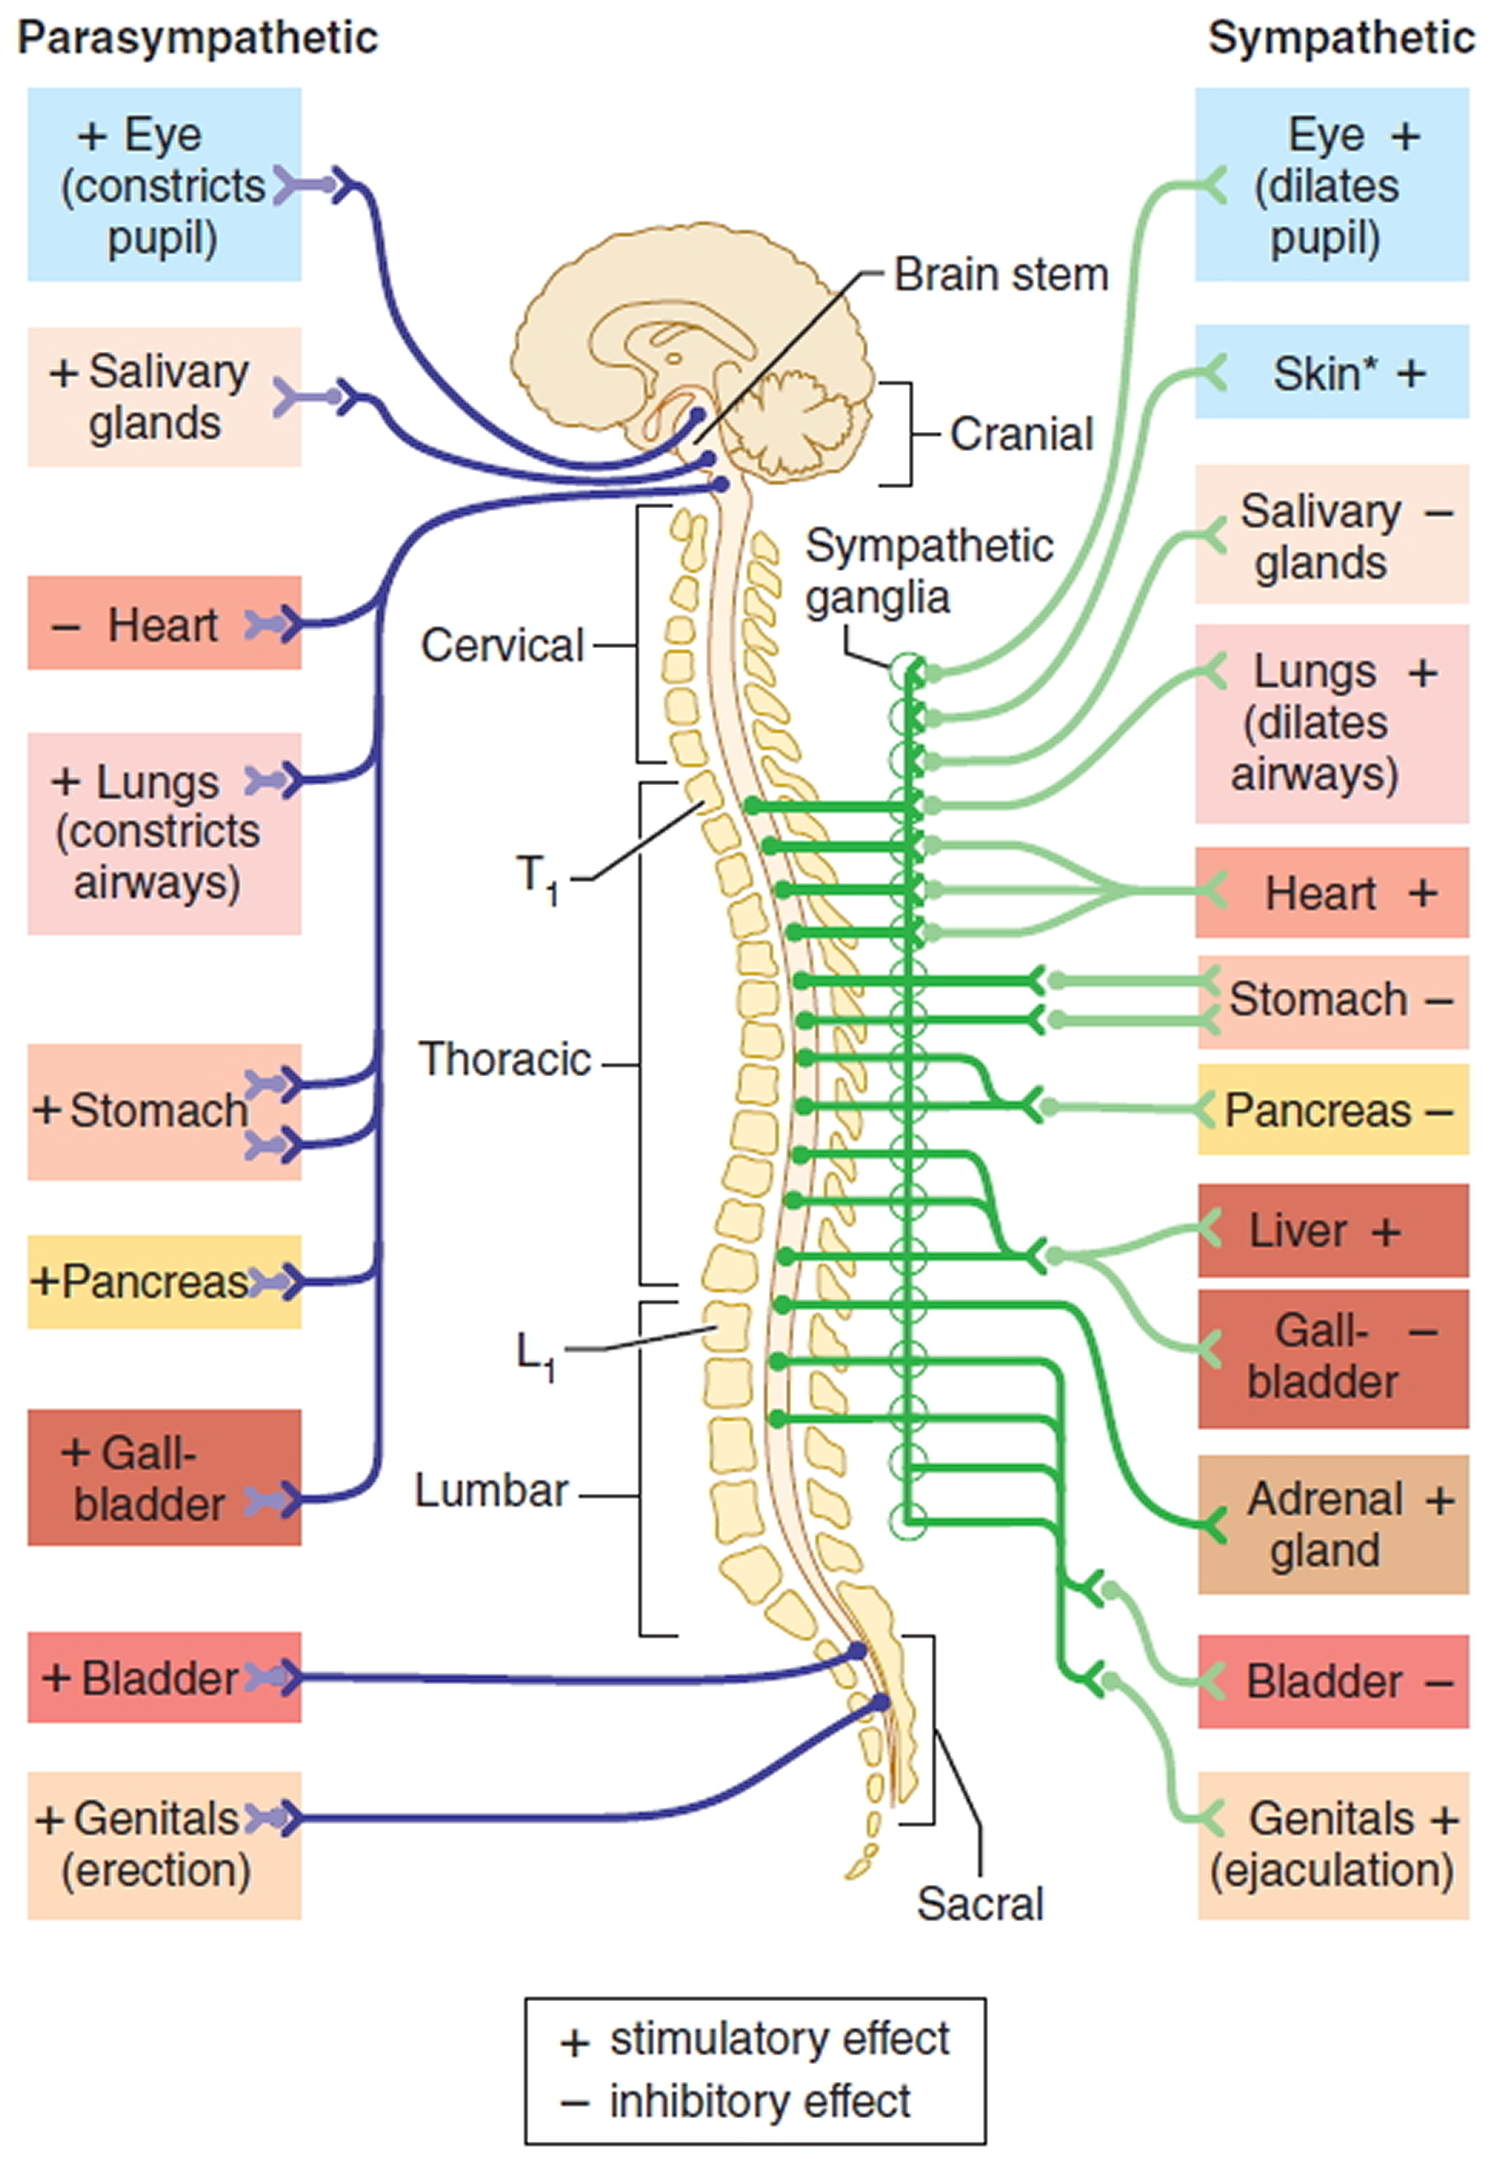 Autonomic nervous system disorders causes, symptoms, diagnosis